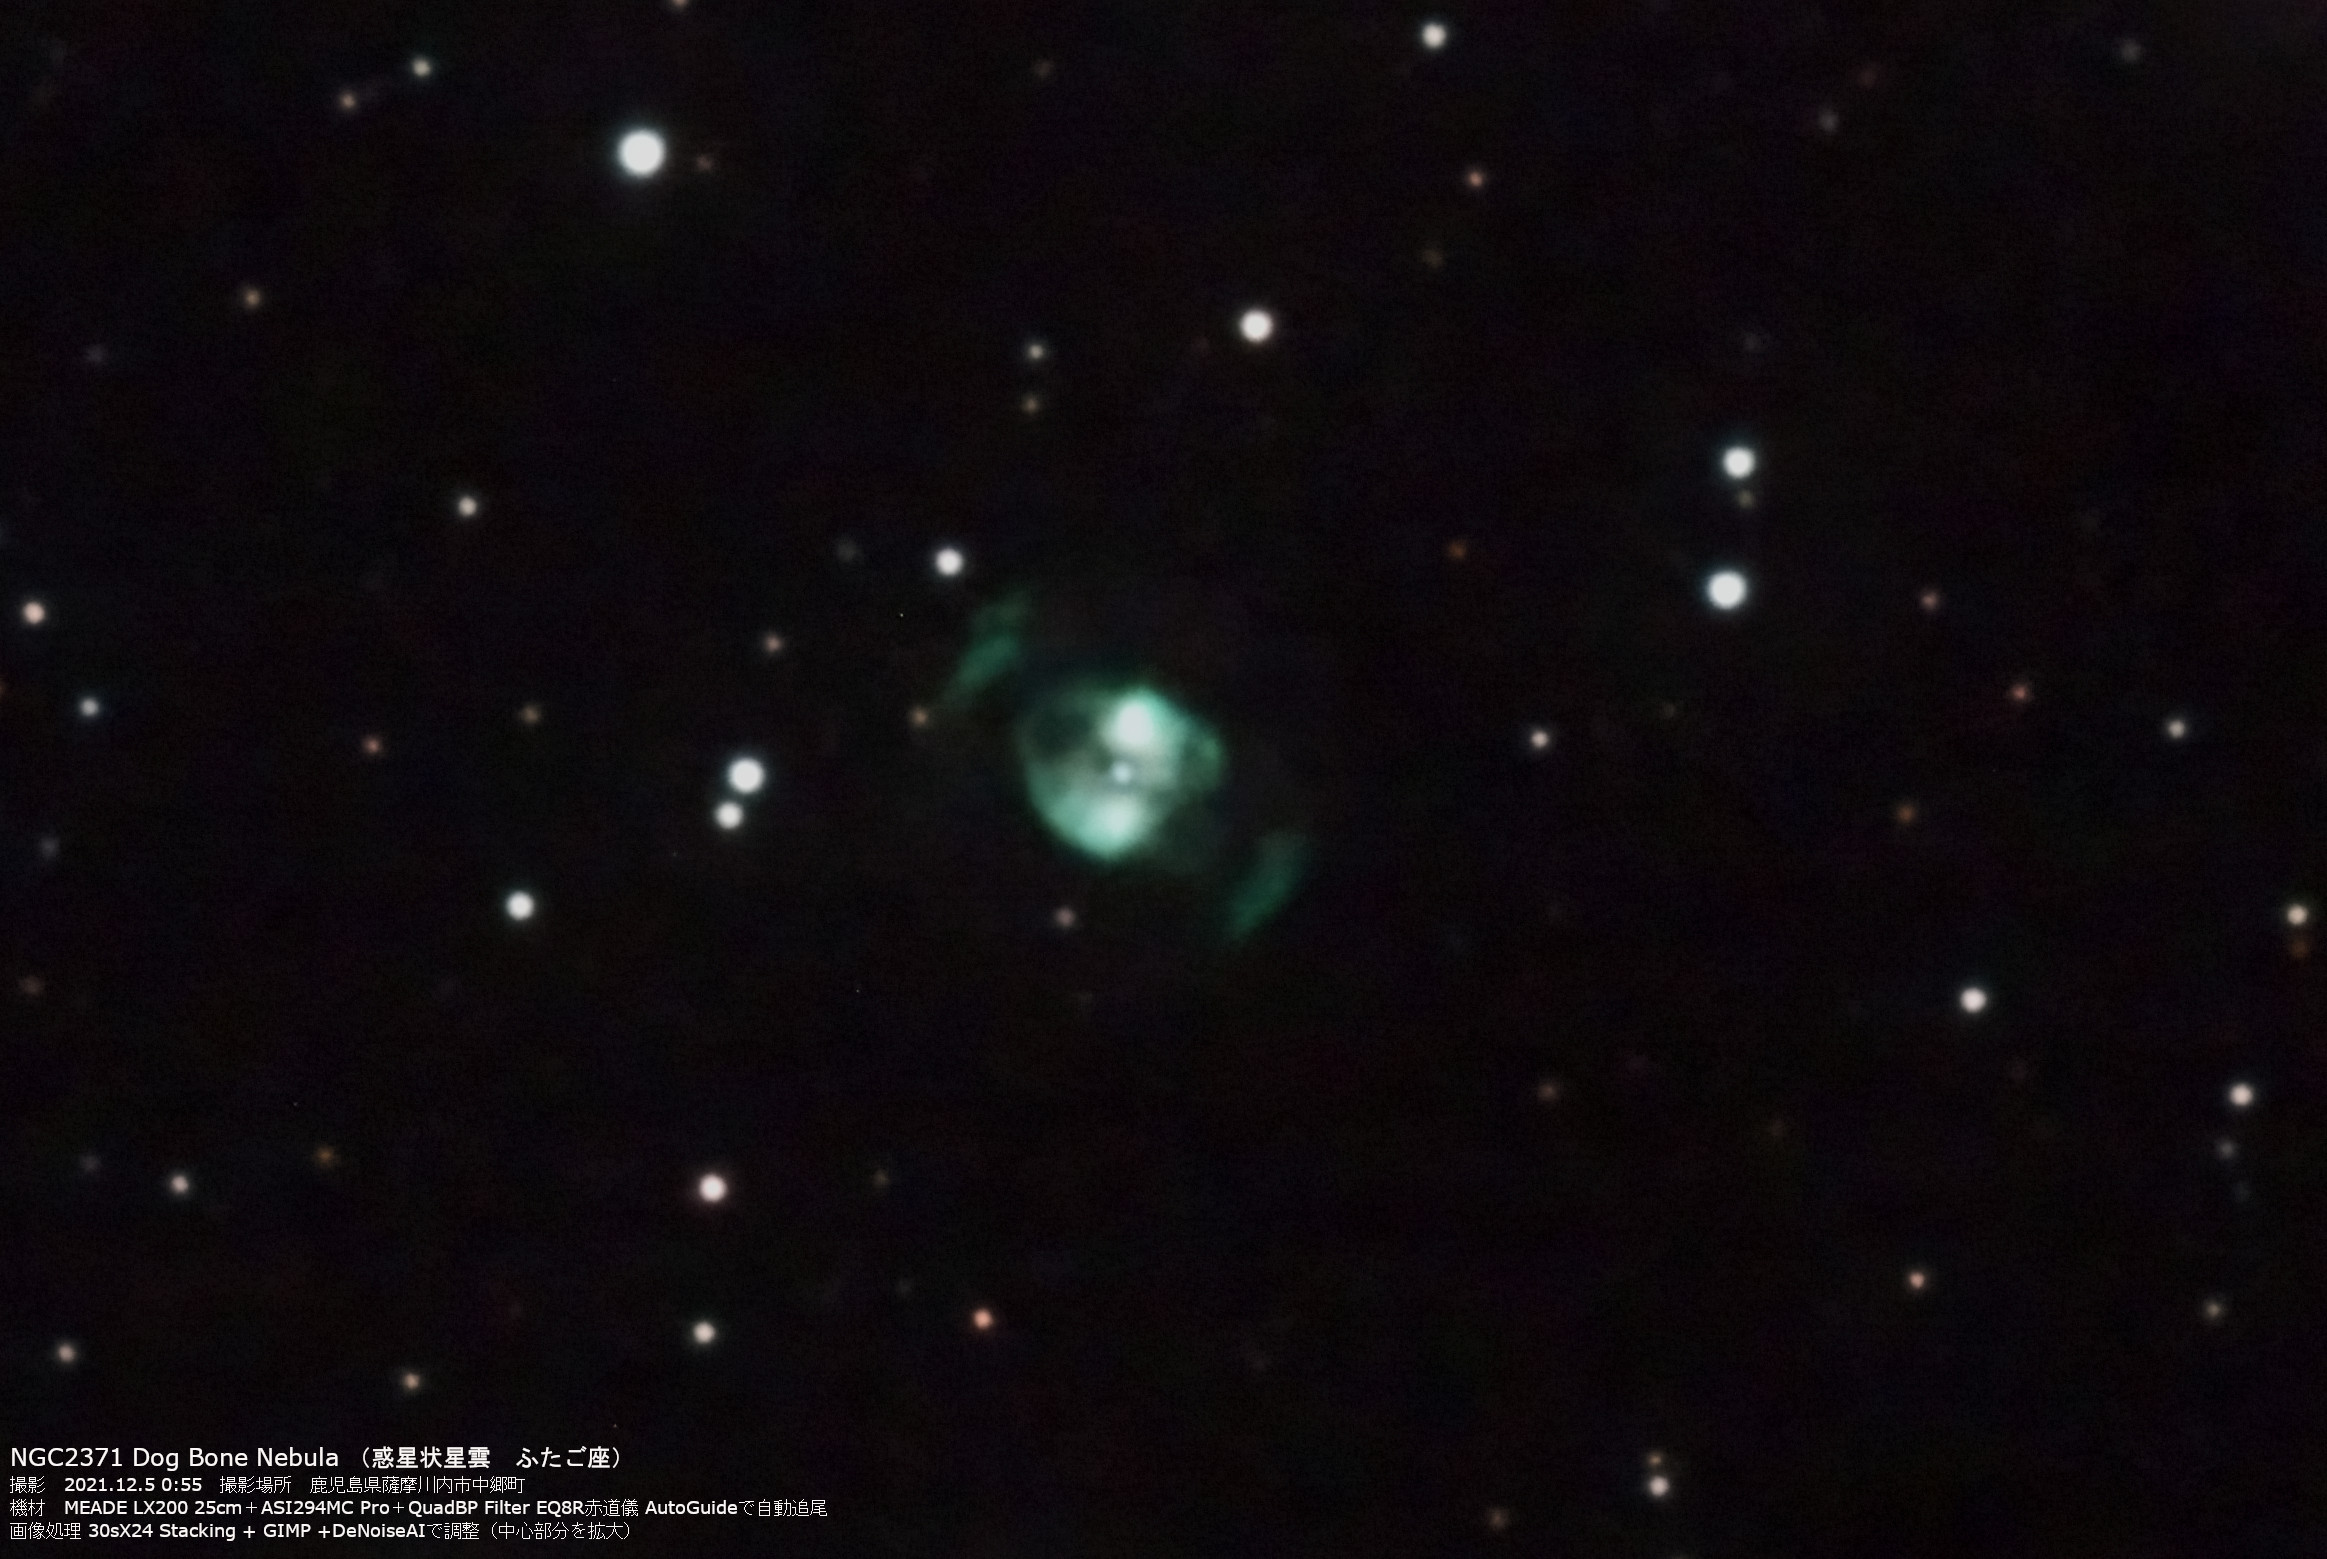 wNGC2371iDog Bone Nebulajx(2021N125)